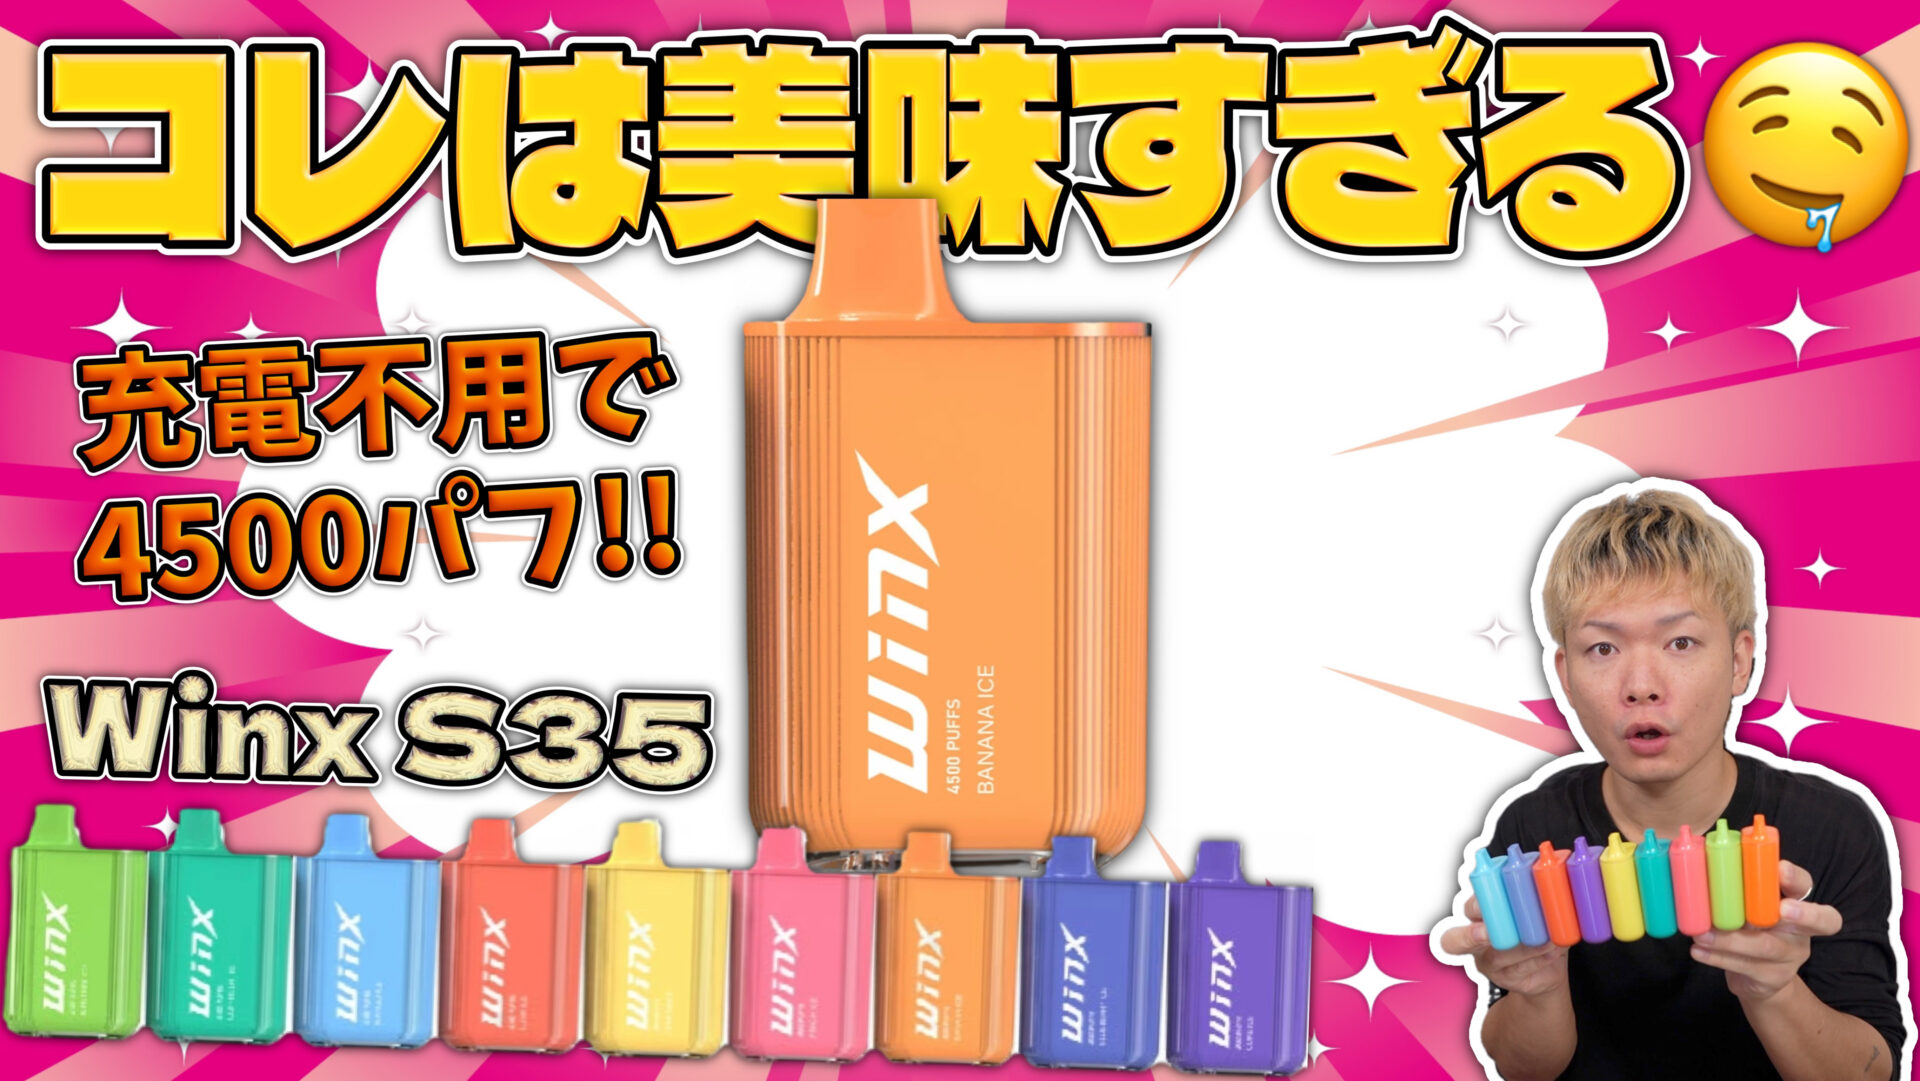 Winx S35 | 4500回も吸えて充電不要!! 『ウィンクス エス35』がコスパ、使い勝手、味のクオリティーのどれもがヤバい🤤👍 |  HORICK TV ブログ